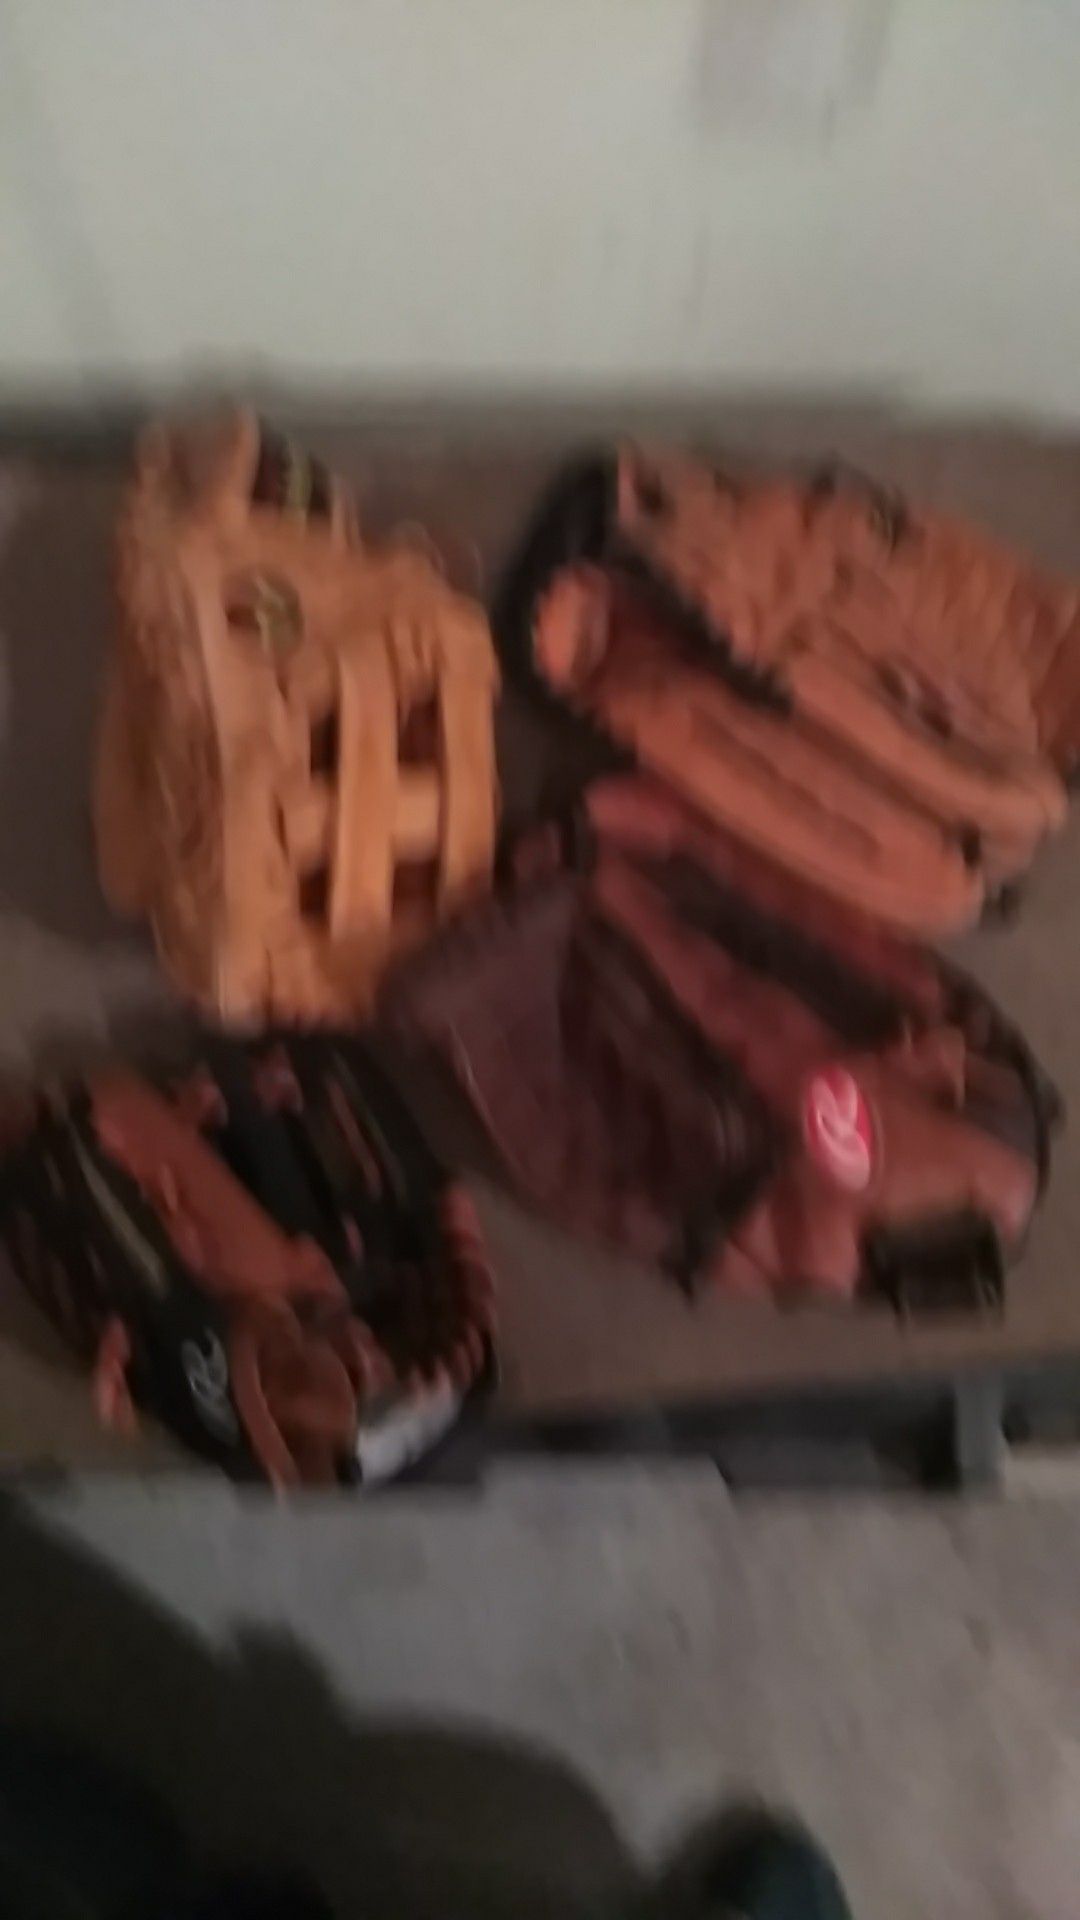 More baseball gloves